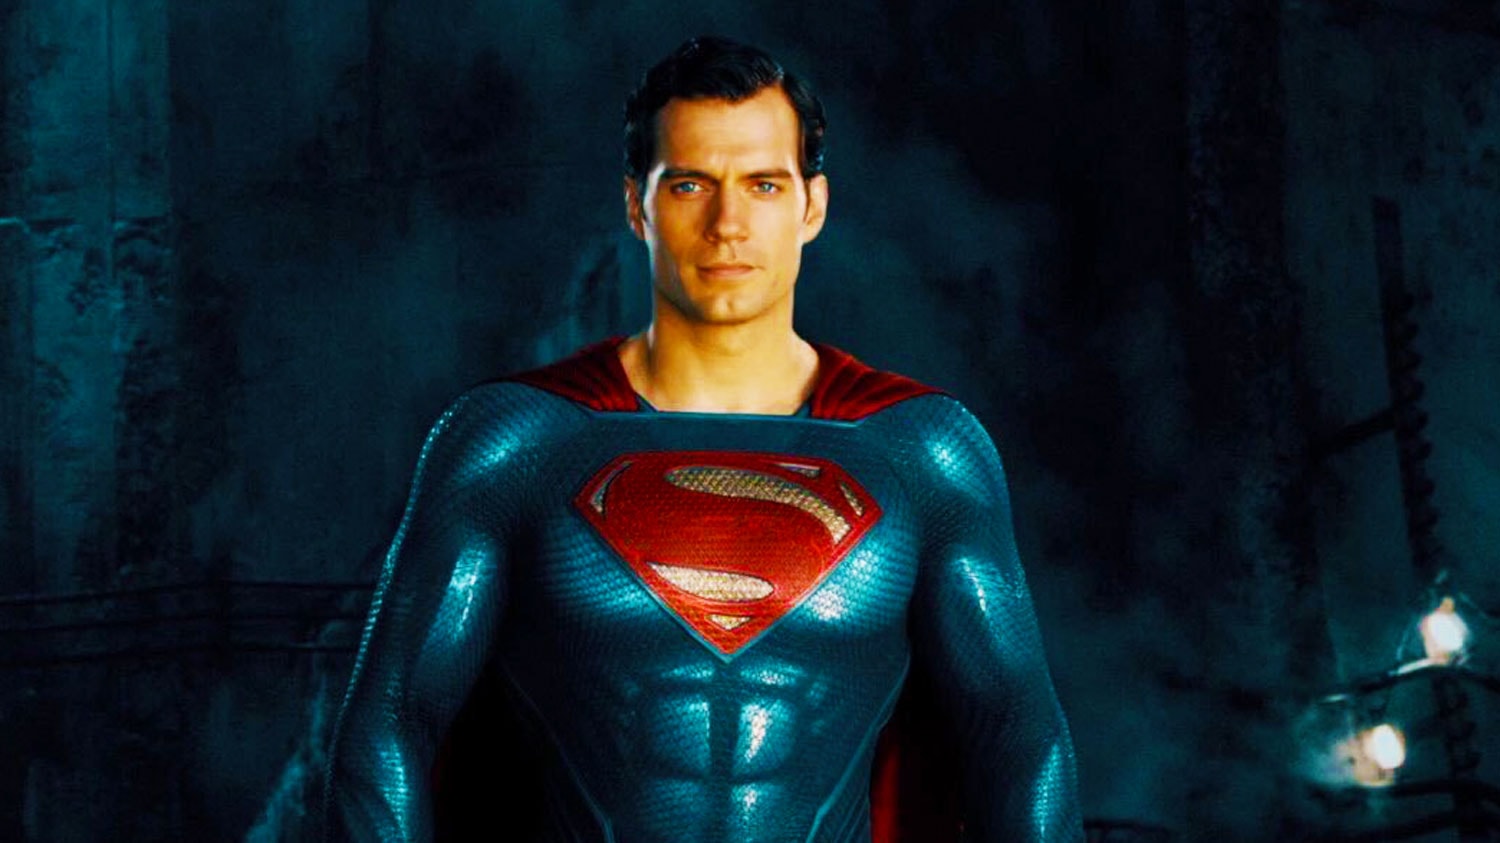 David-Zaslav-Thinking-Bringing-Henry-Cavill-Back-Superman